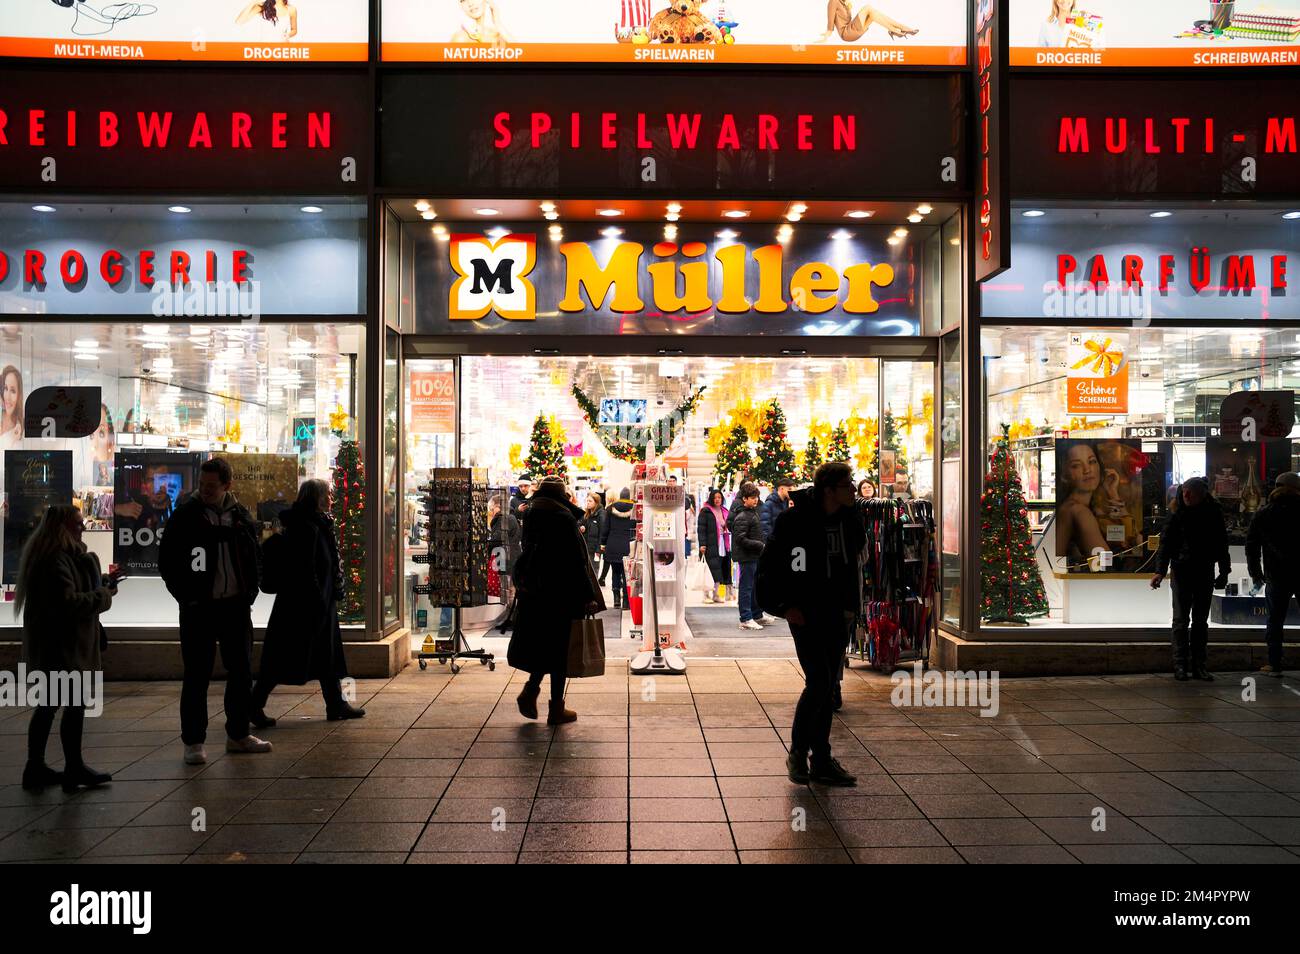 Mueller drugstore, department stores' chain, night shot, Koenigsstrasse, Stuttgart, Baden-Wuerttemberg, Germany Stock Photo